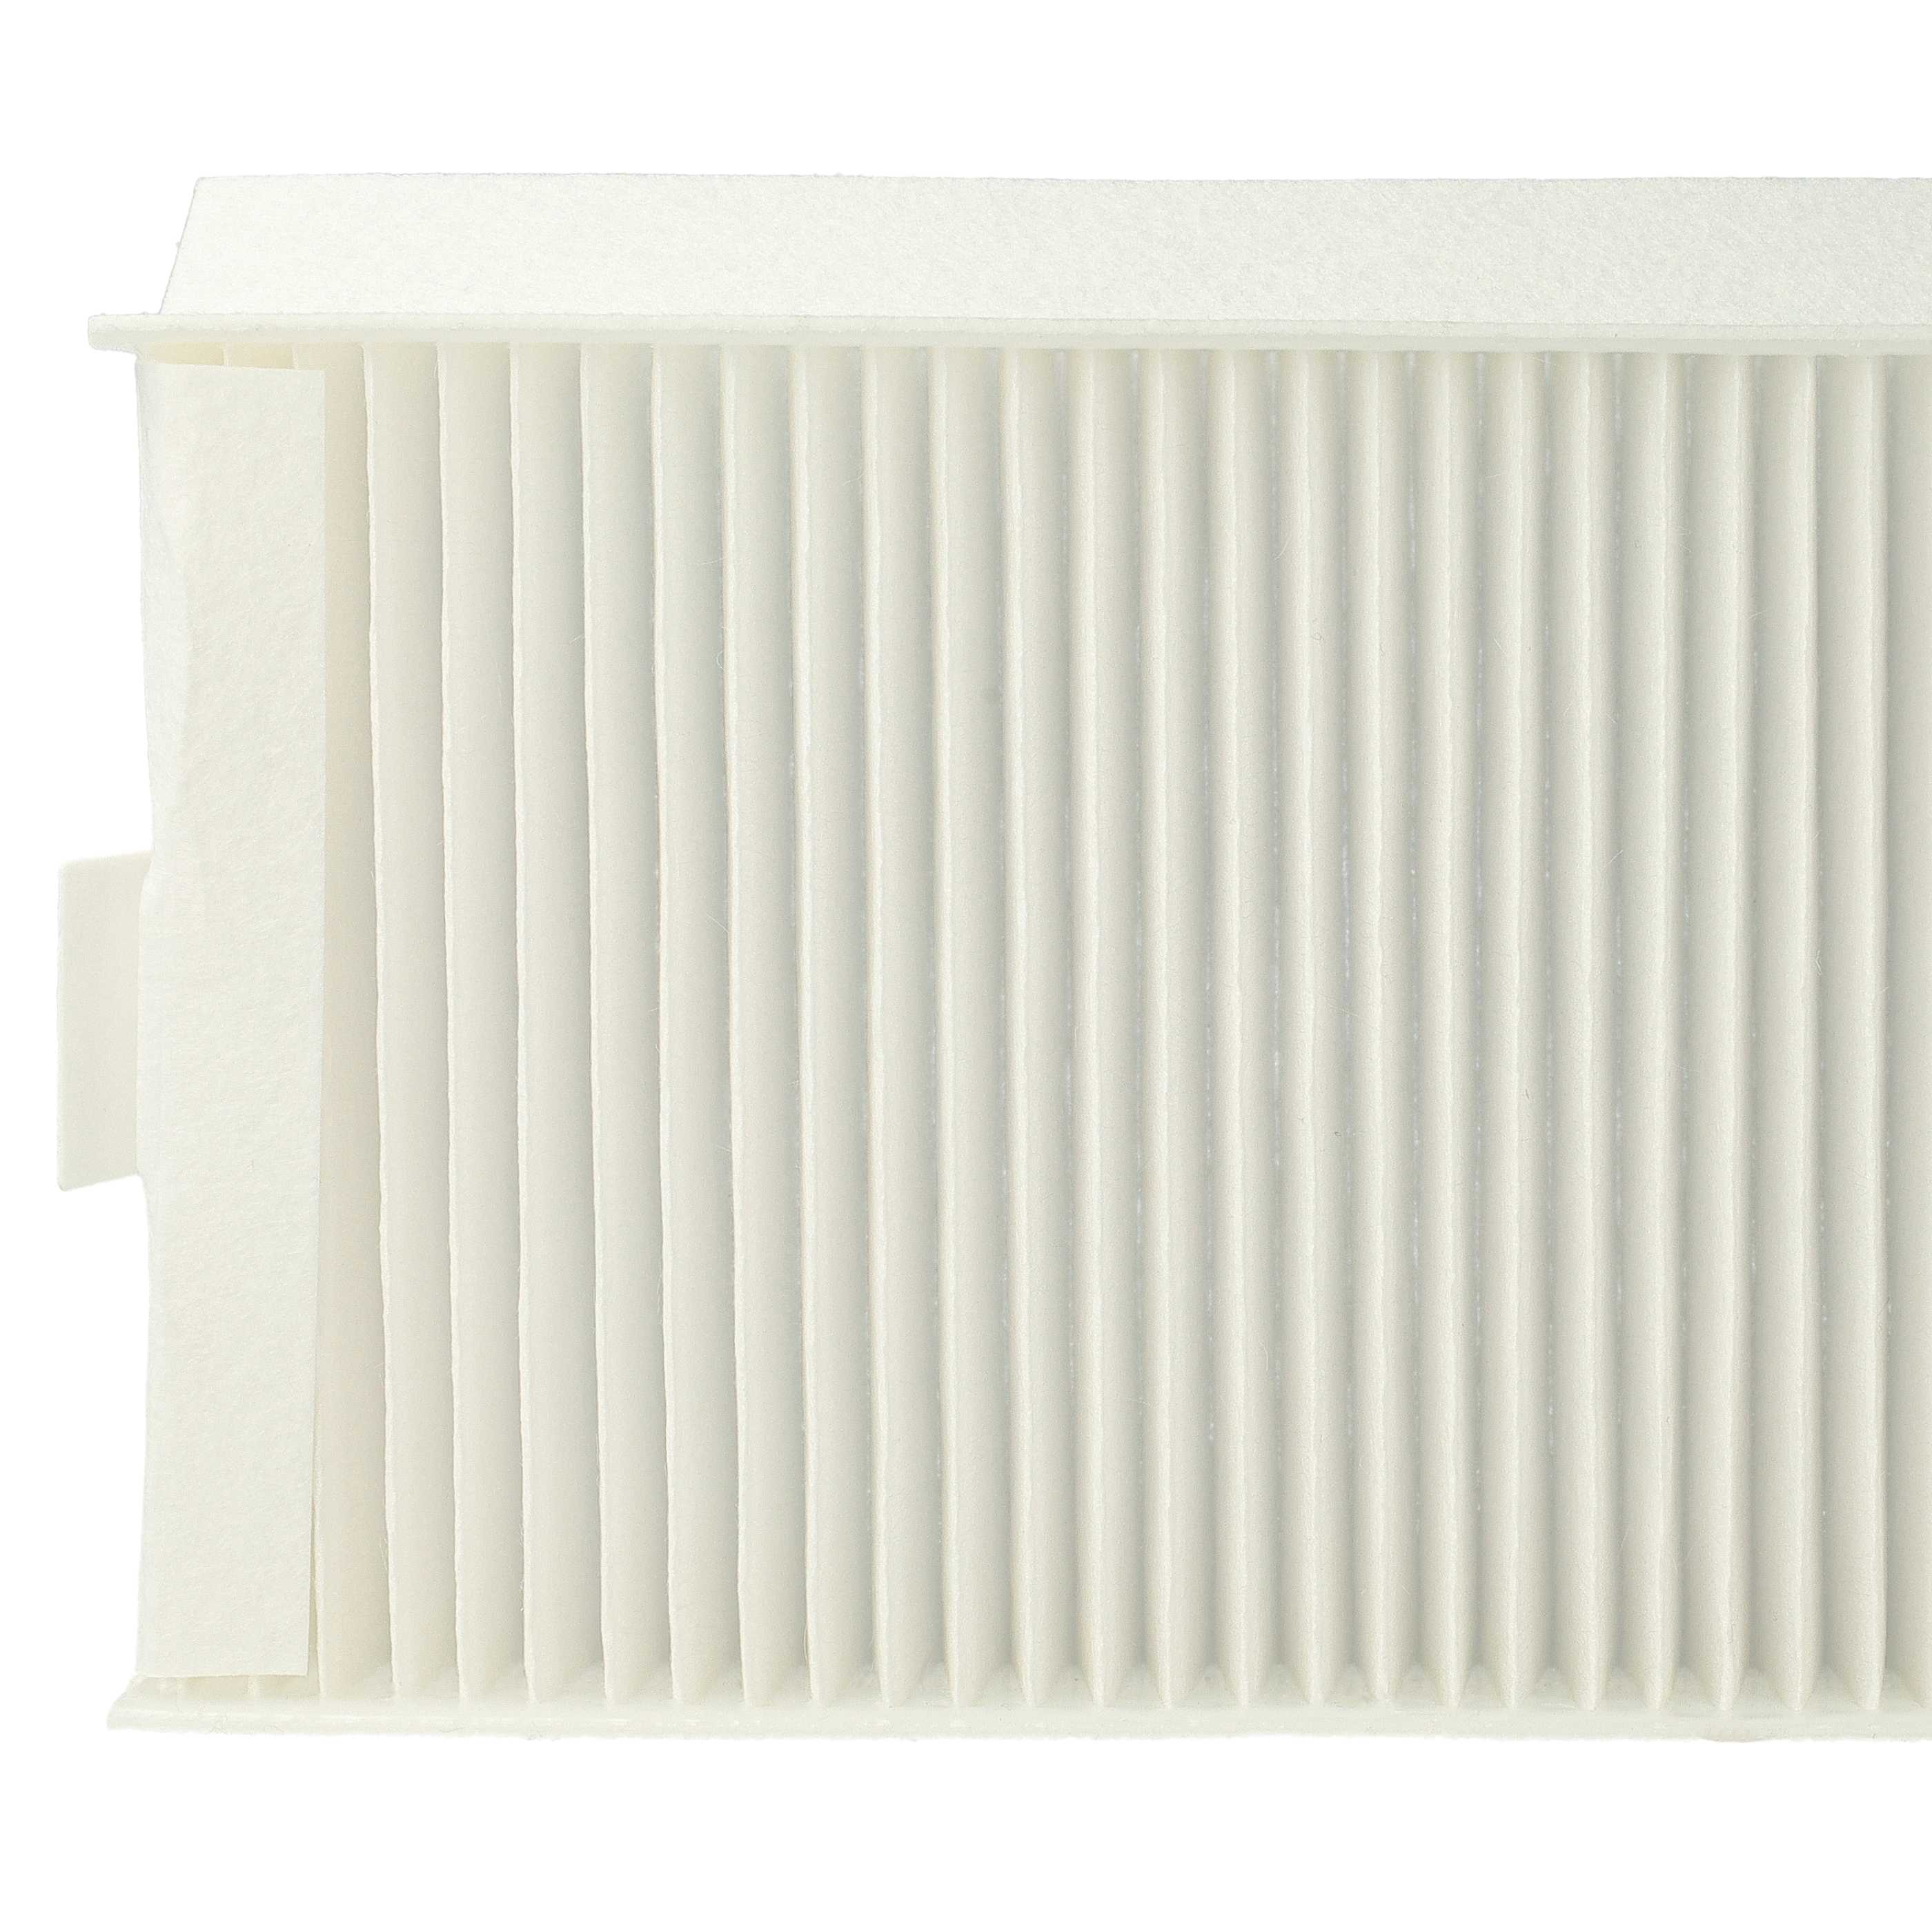 Lot de filtres remplace Zehnder 400100091 pour appareil de ventilation Zehnder - Filtre à air G4 / F7 (2 pcs)